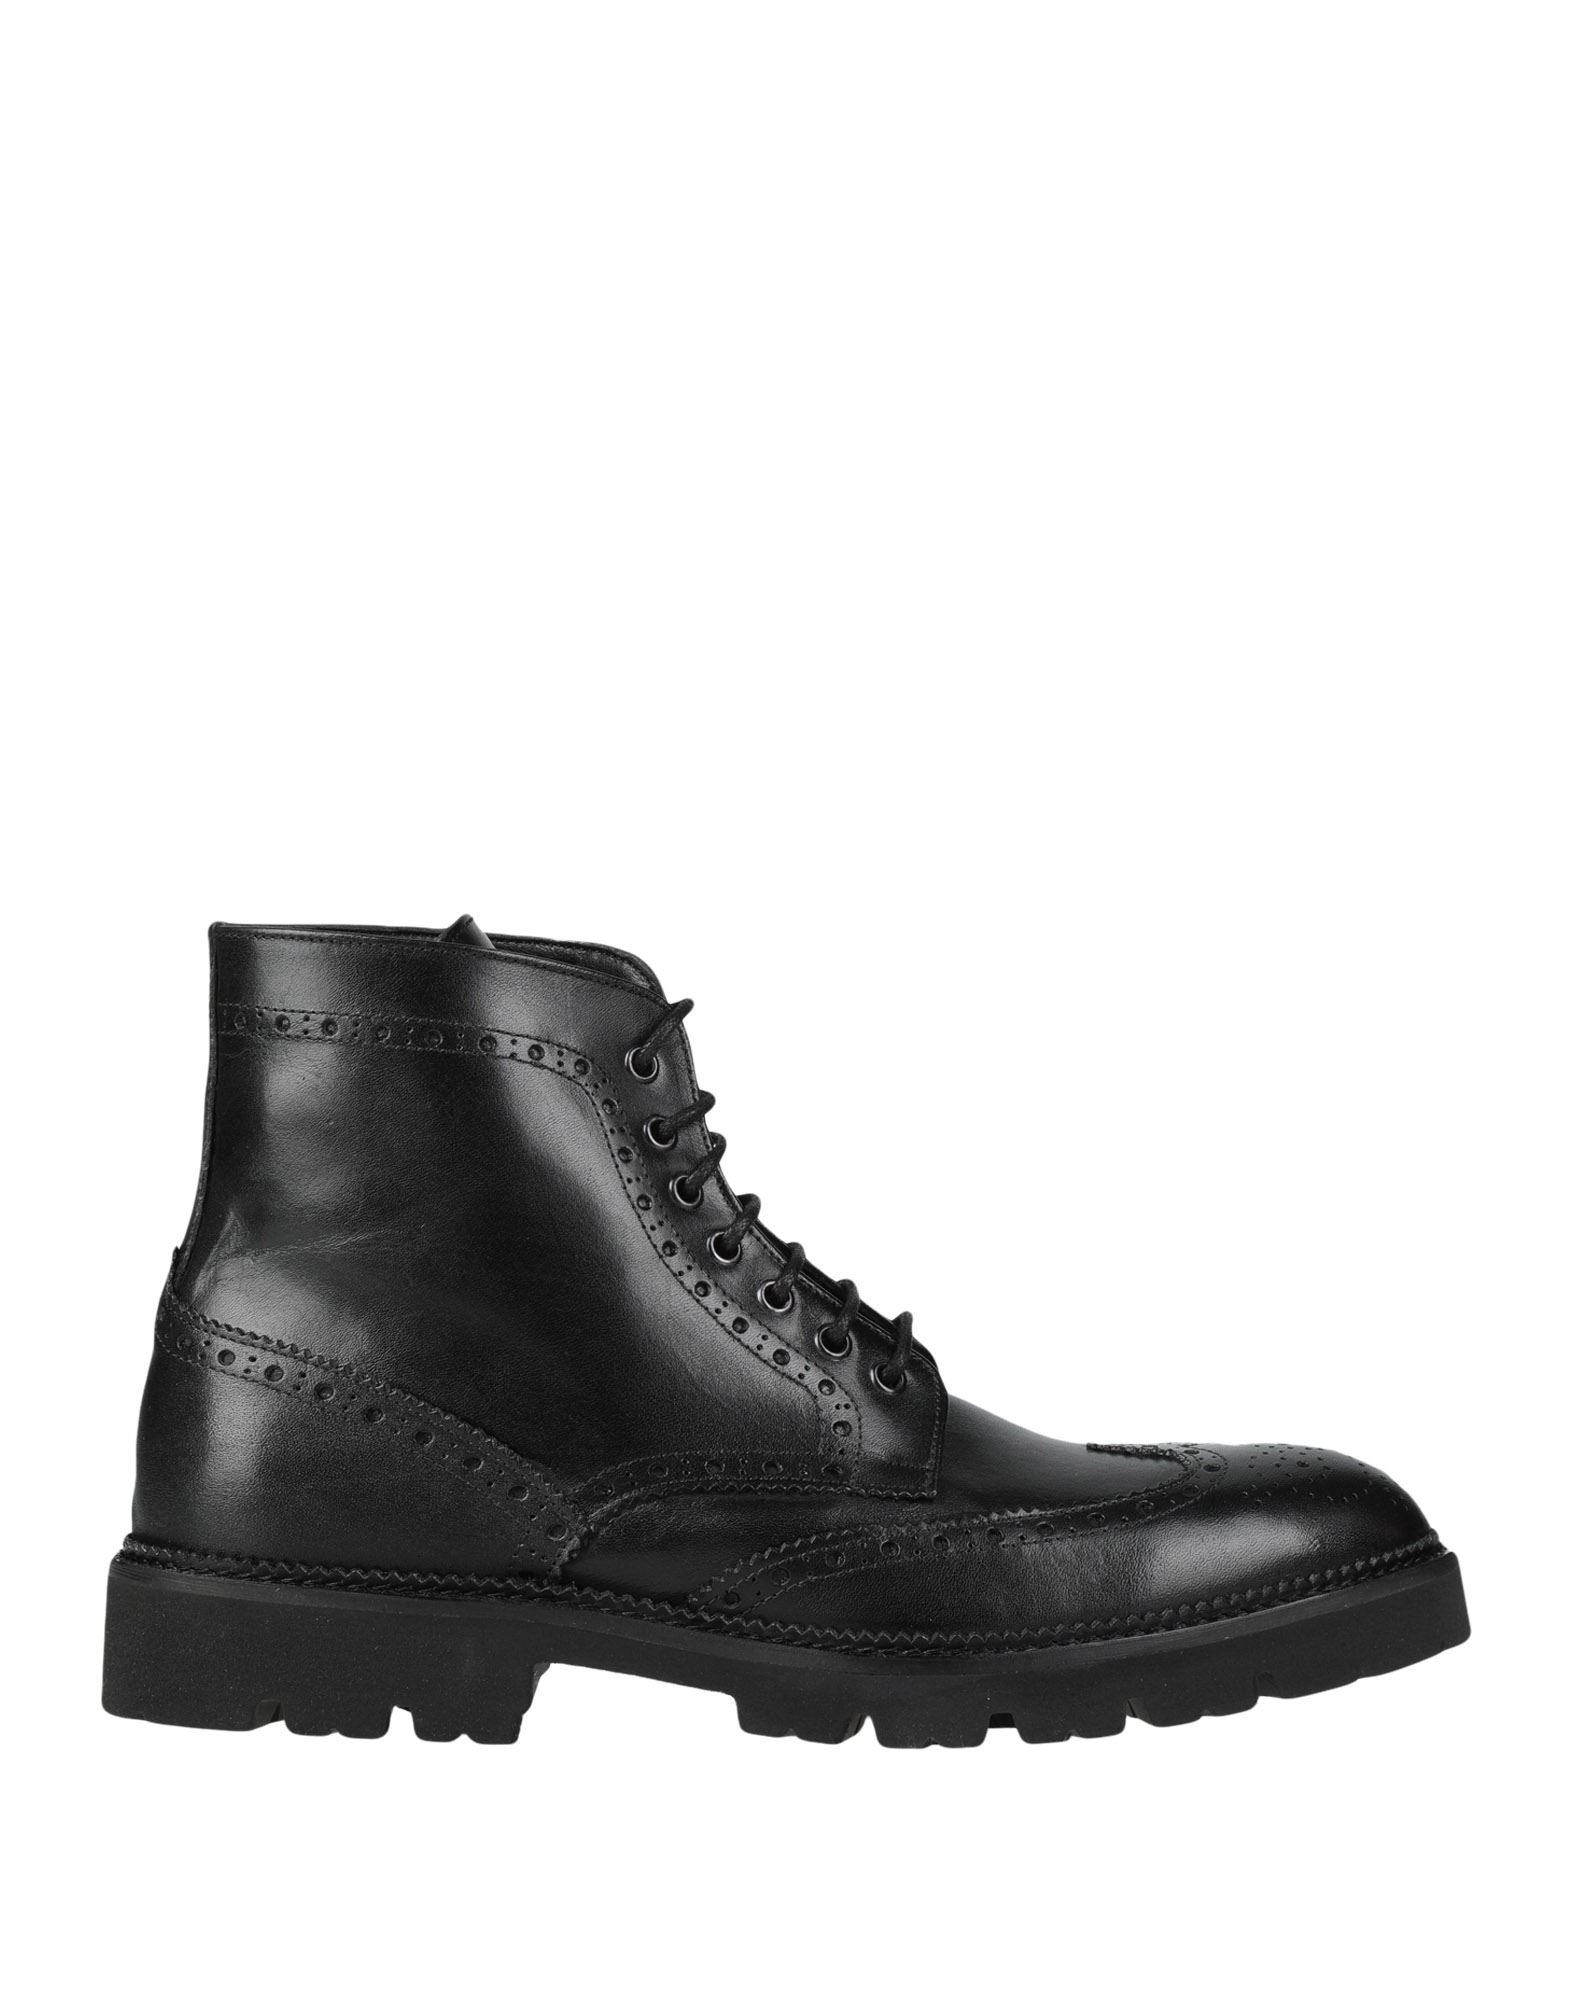 Artigiani Aurelio Giocondi Ankle Boots In Black